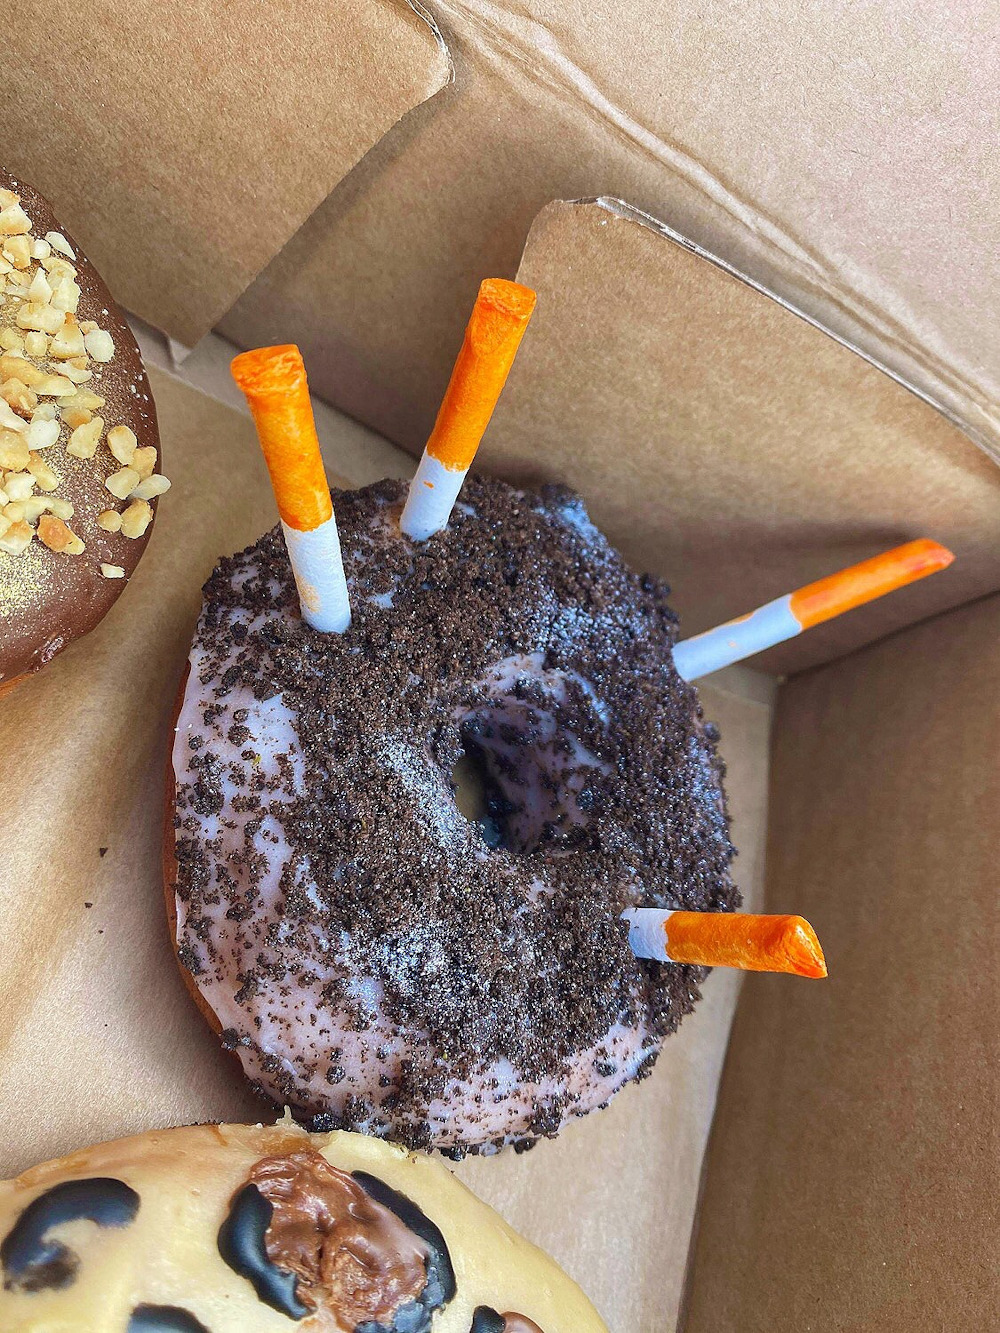 Donut shaped like ashtray